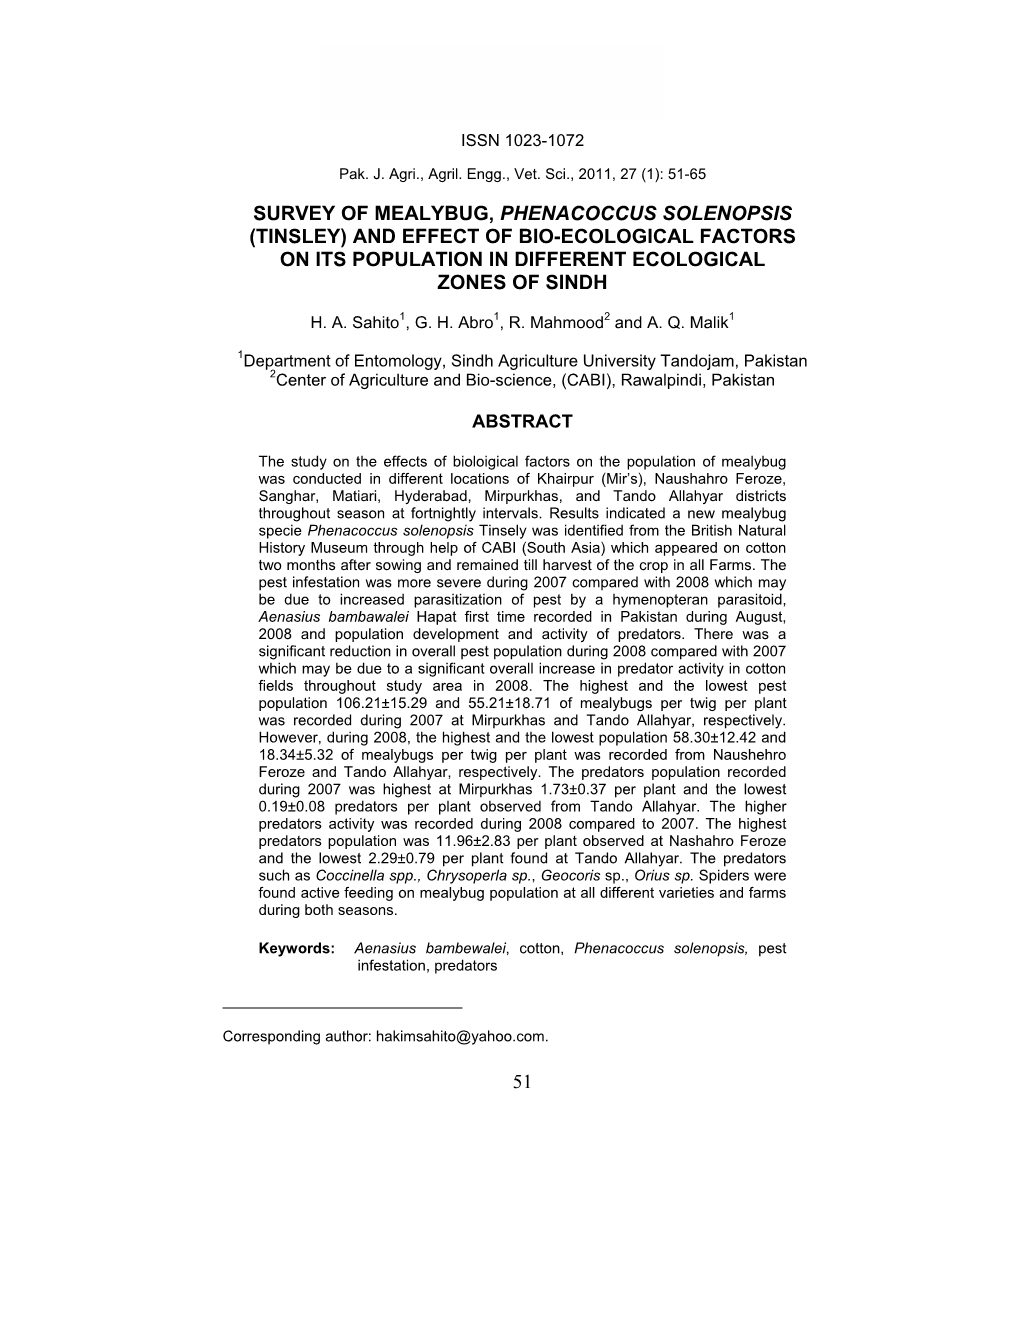 51 Survey of Mealybug, Phenacoccus Solenopsis